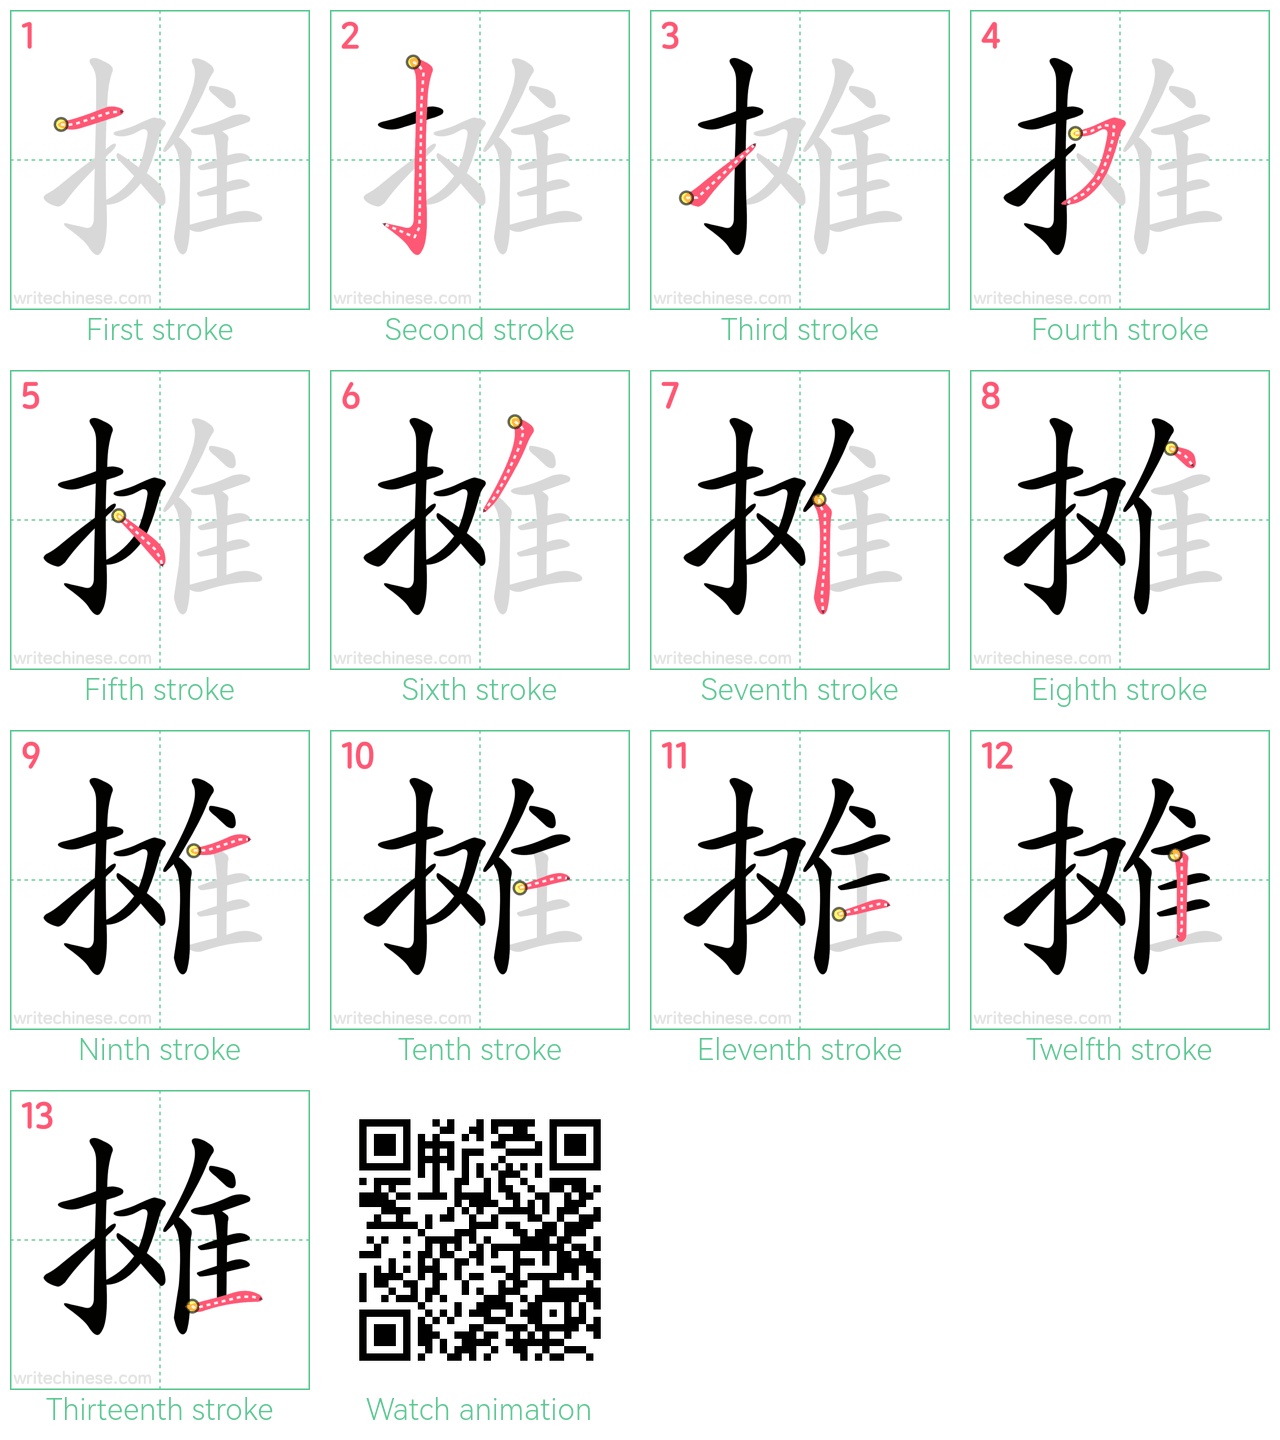 摊 step-by-step stroke order diagrams